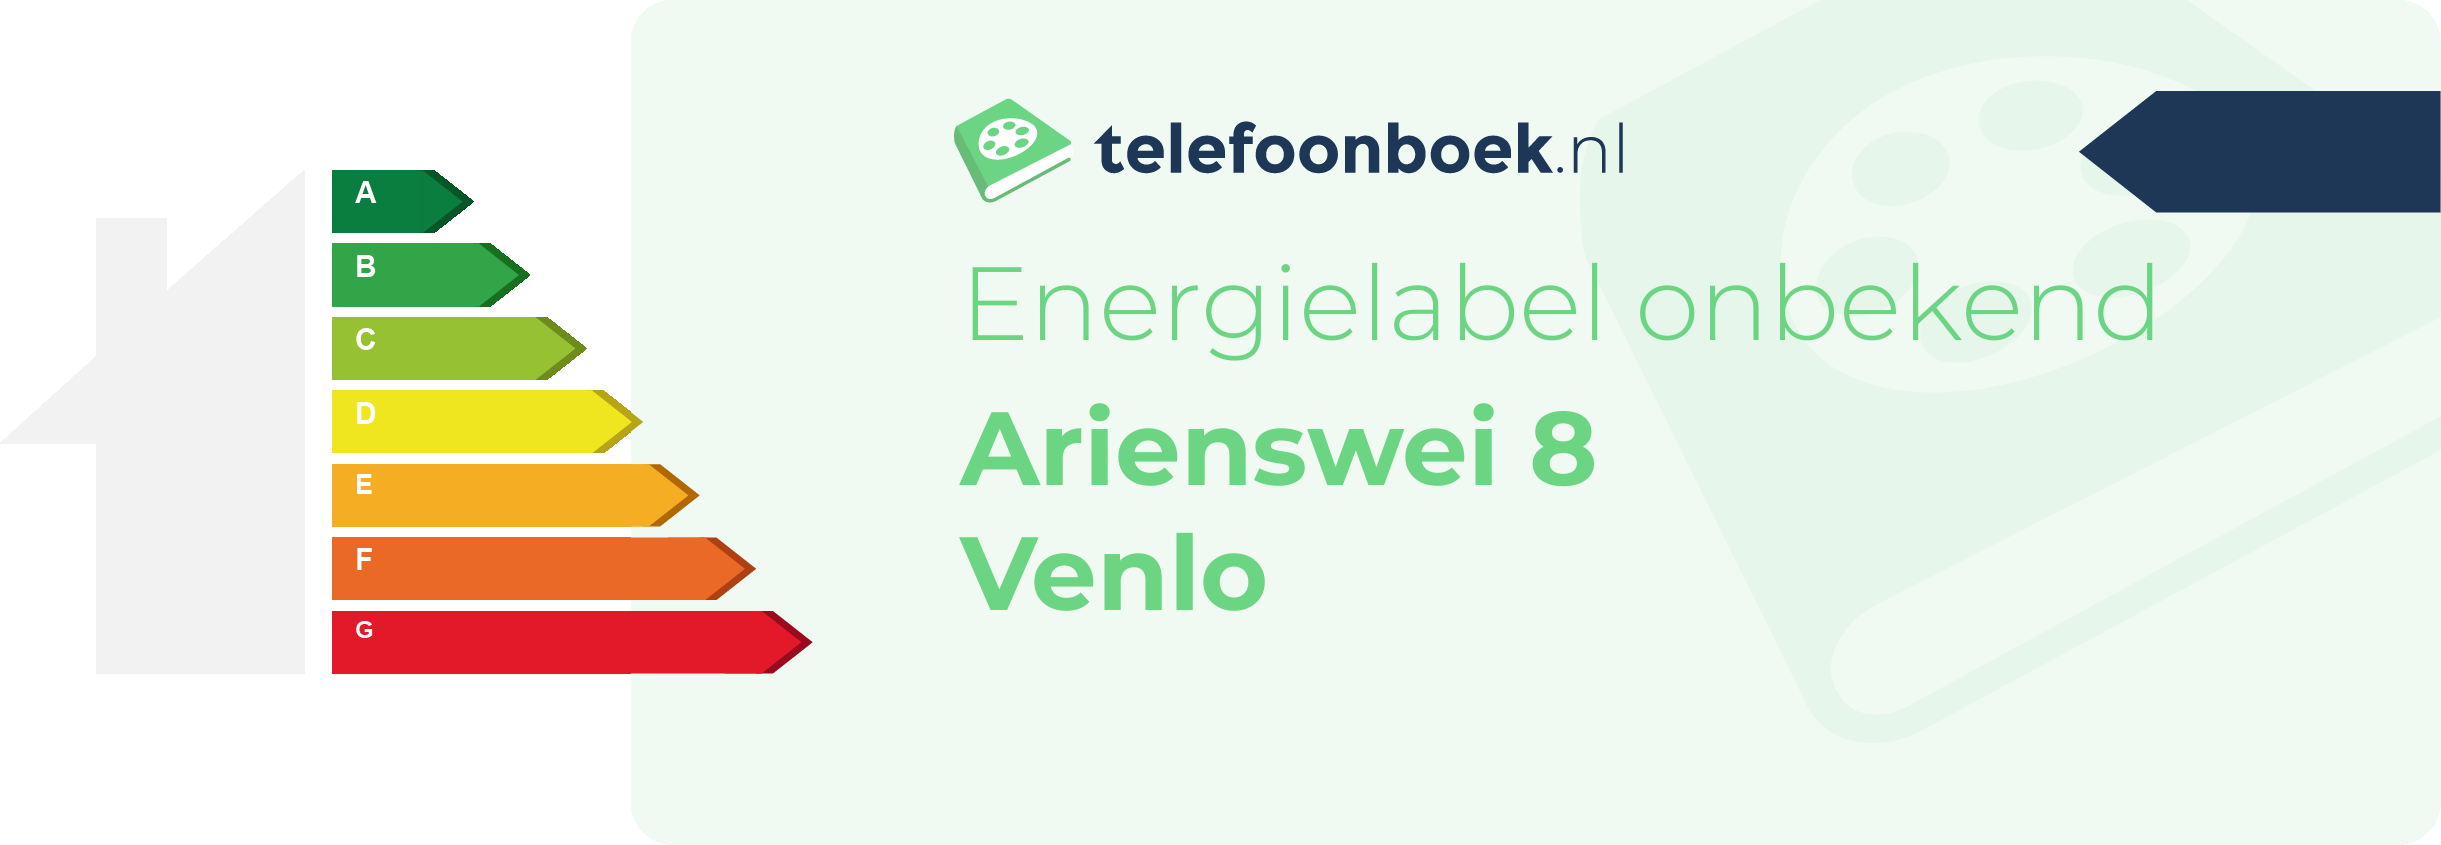 Energielabel Arienswei 8 Venlo